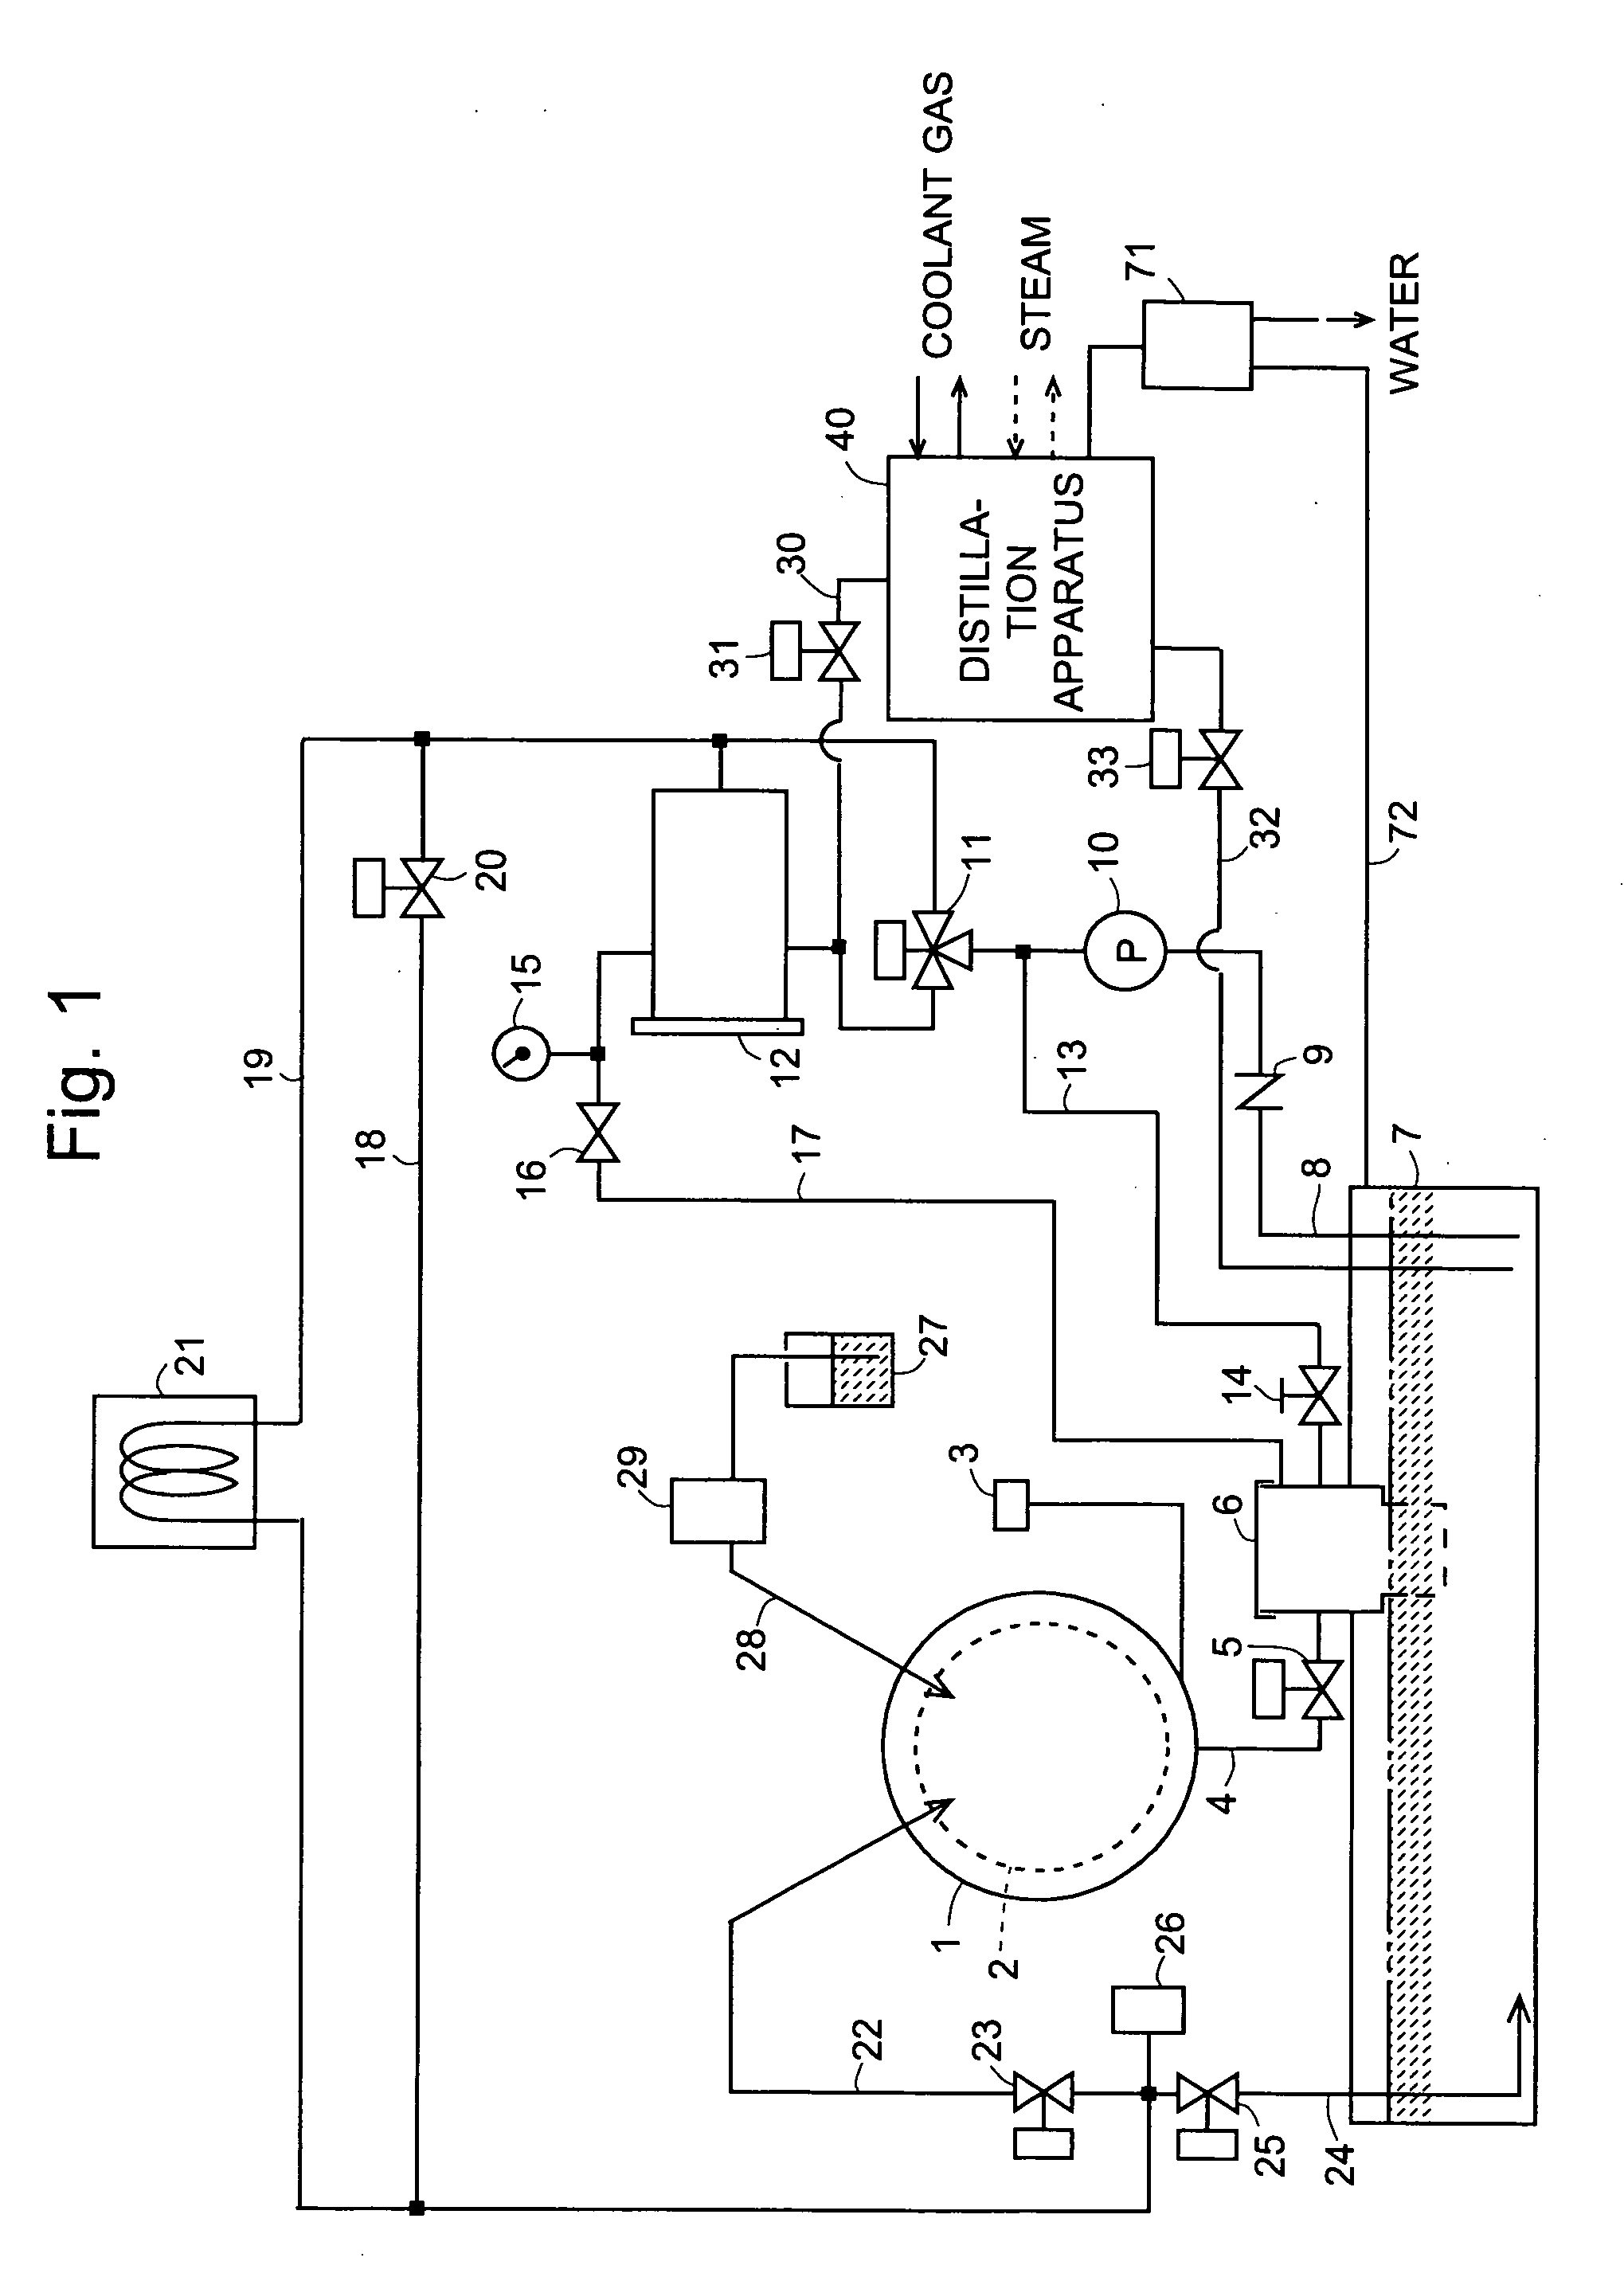 Distillation apparatus